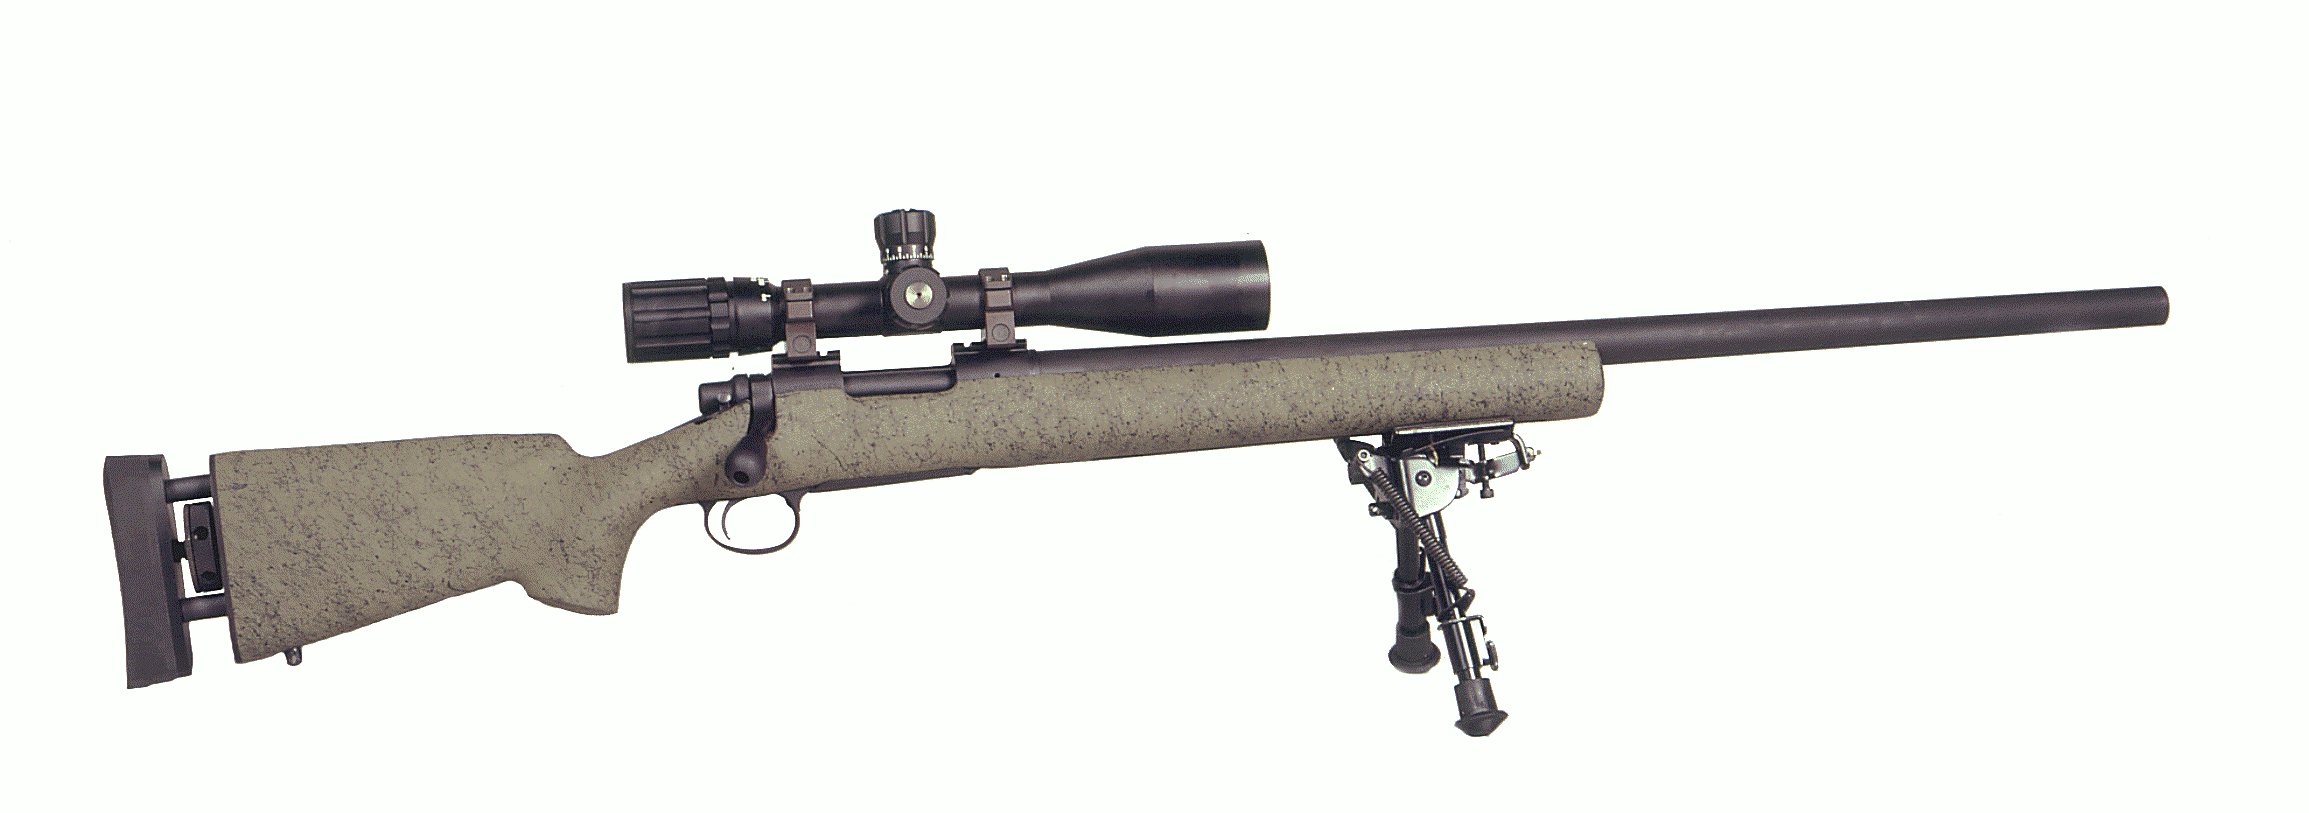 что такое снайперская винтовка в пабг фото 95